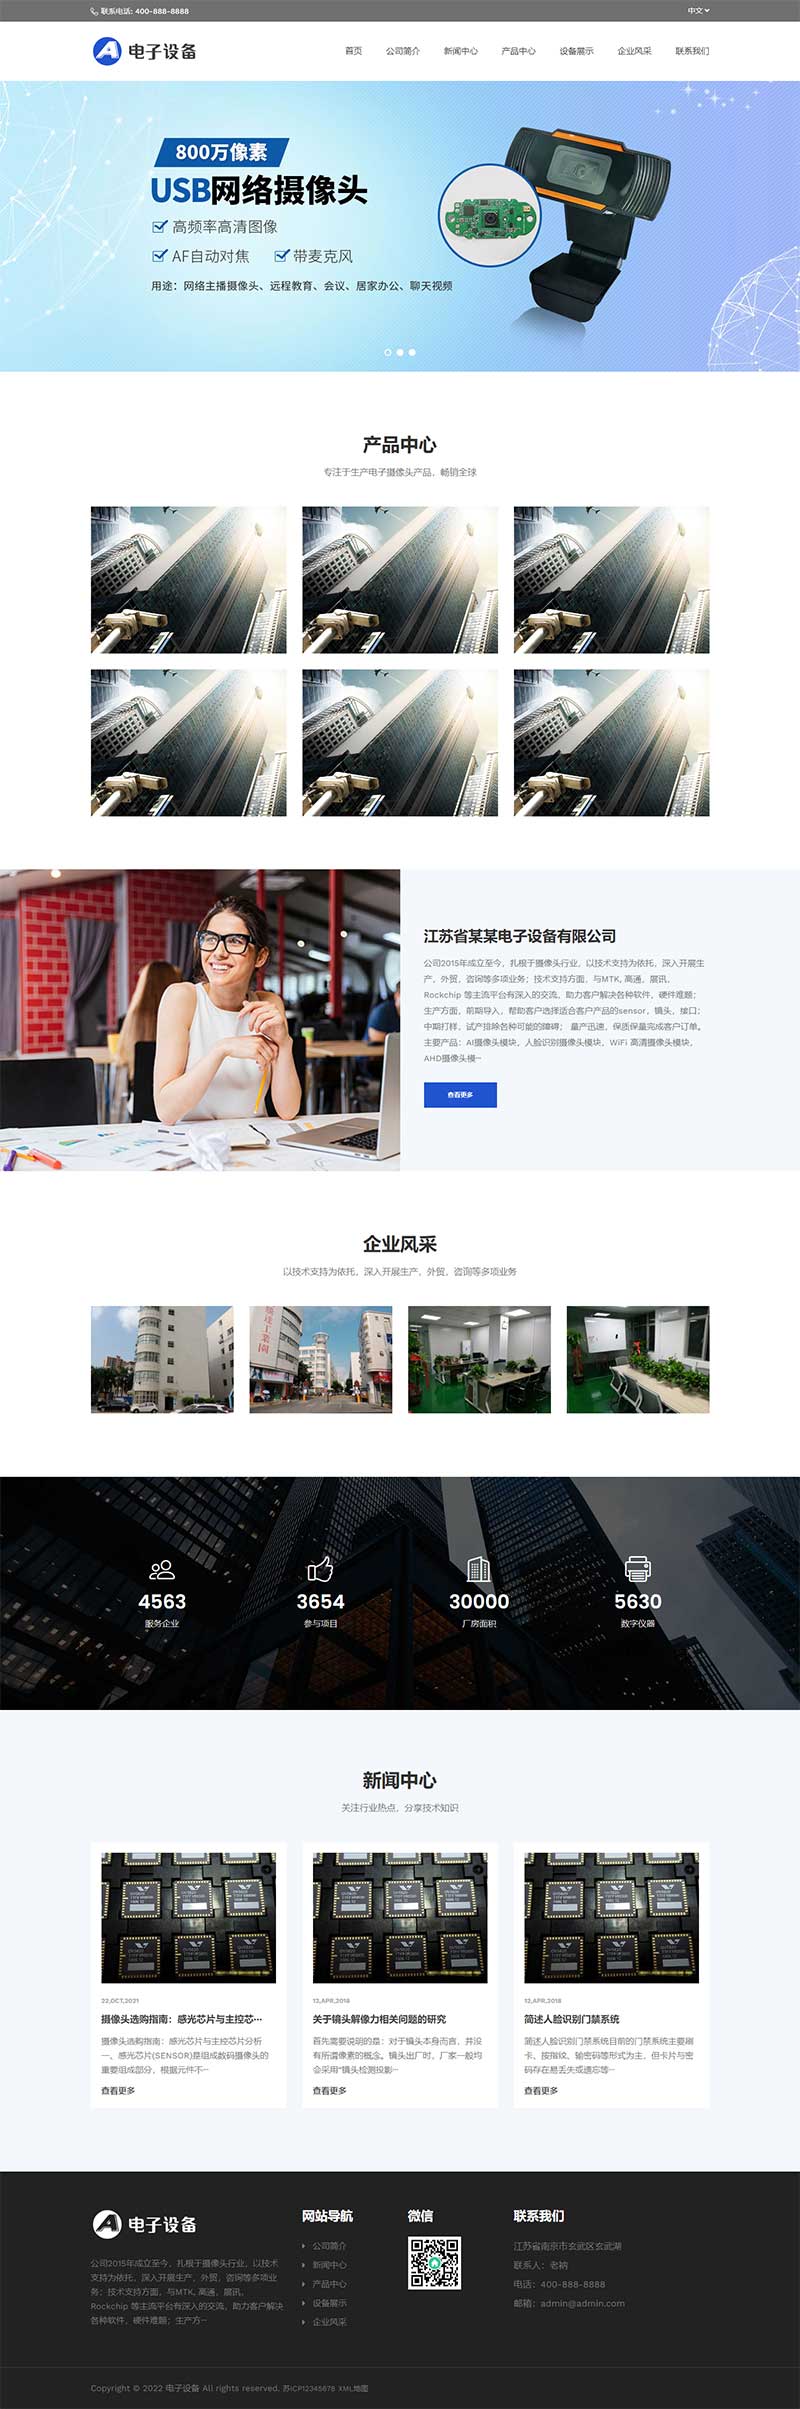 中英文双语网络摄像头探头电子摄像头Wordpress网站模板效果图